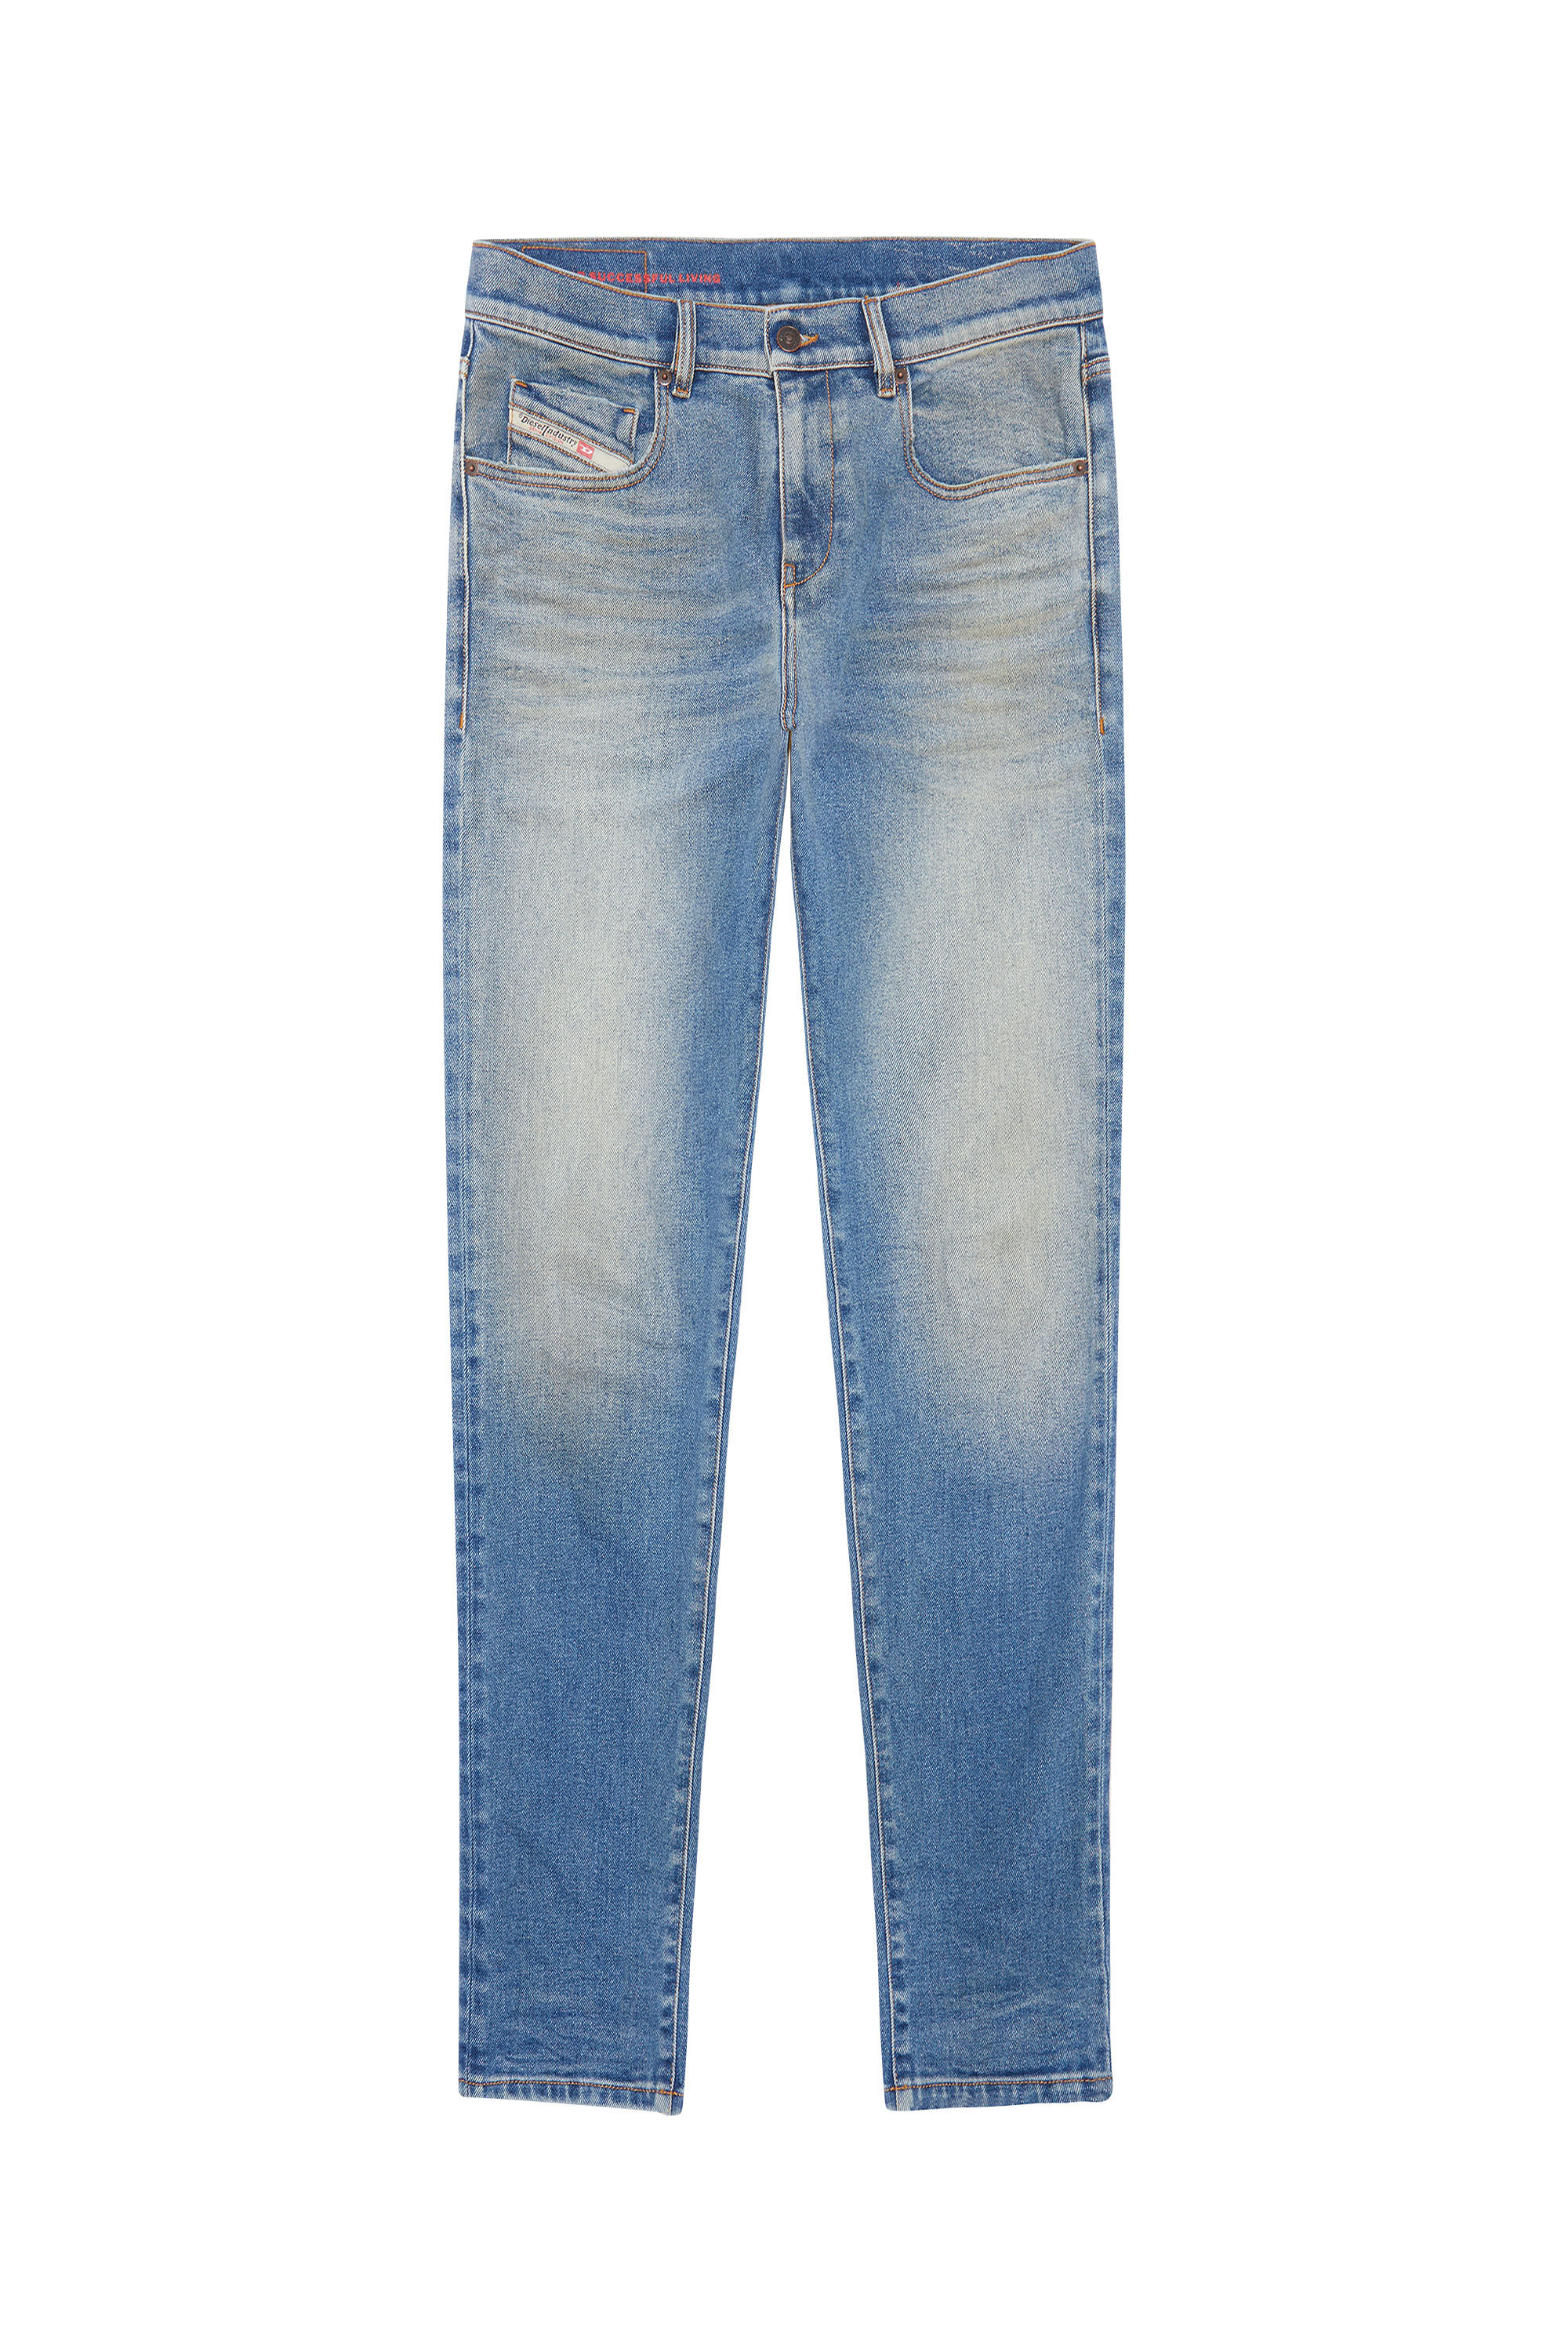 Diesel - Slim Jeans 2019 D-Strukt 09D81, Light Blue - Image 2